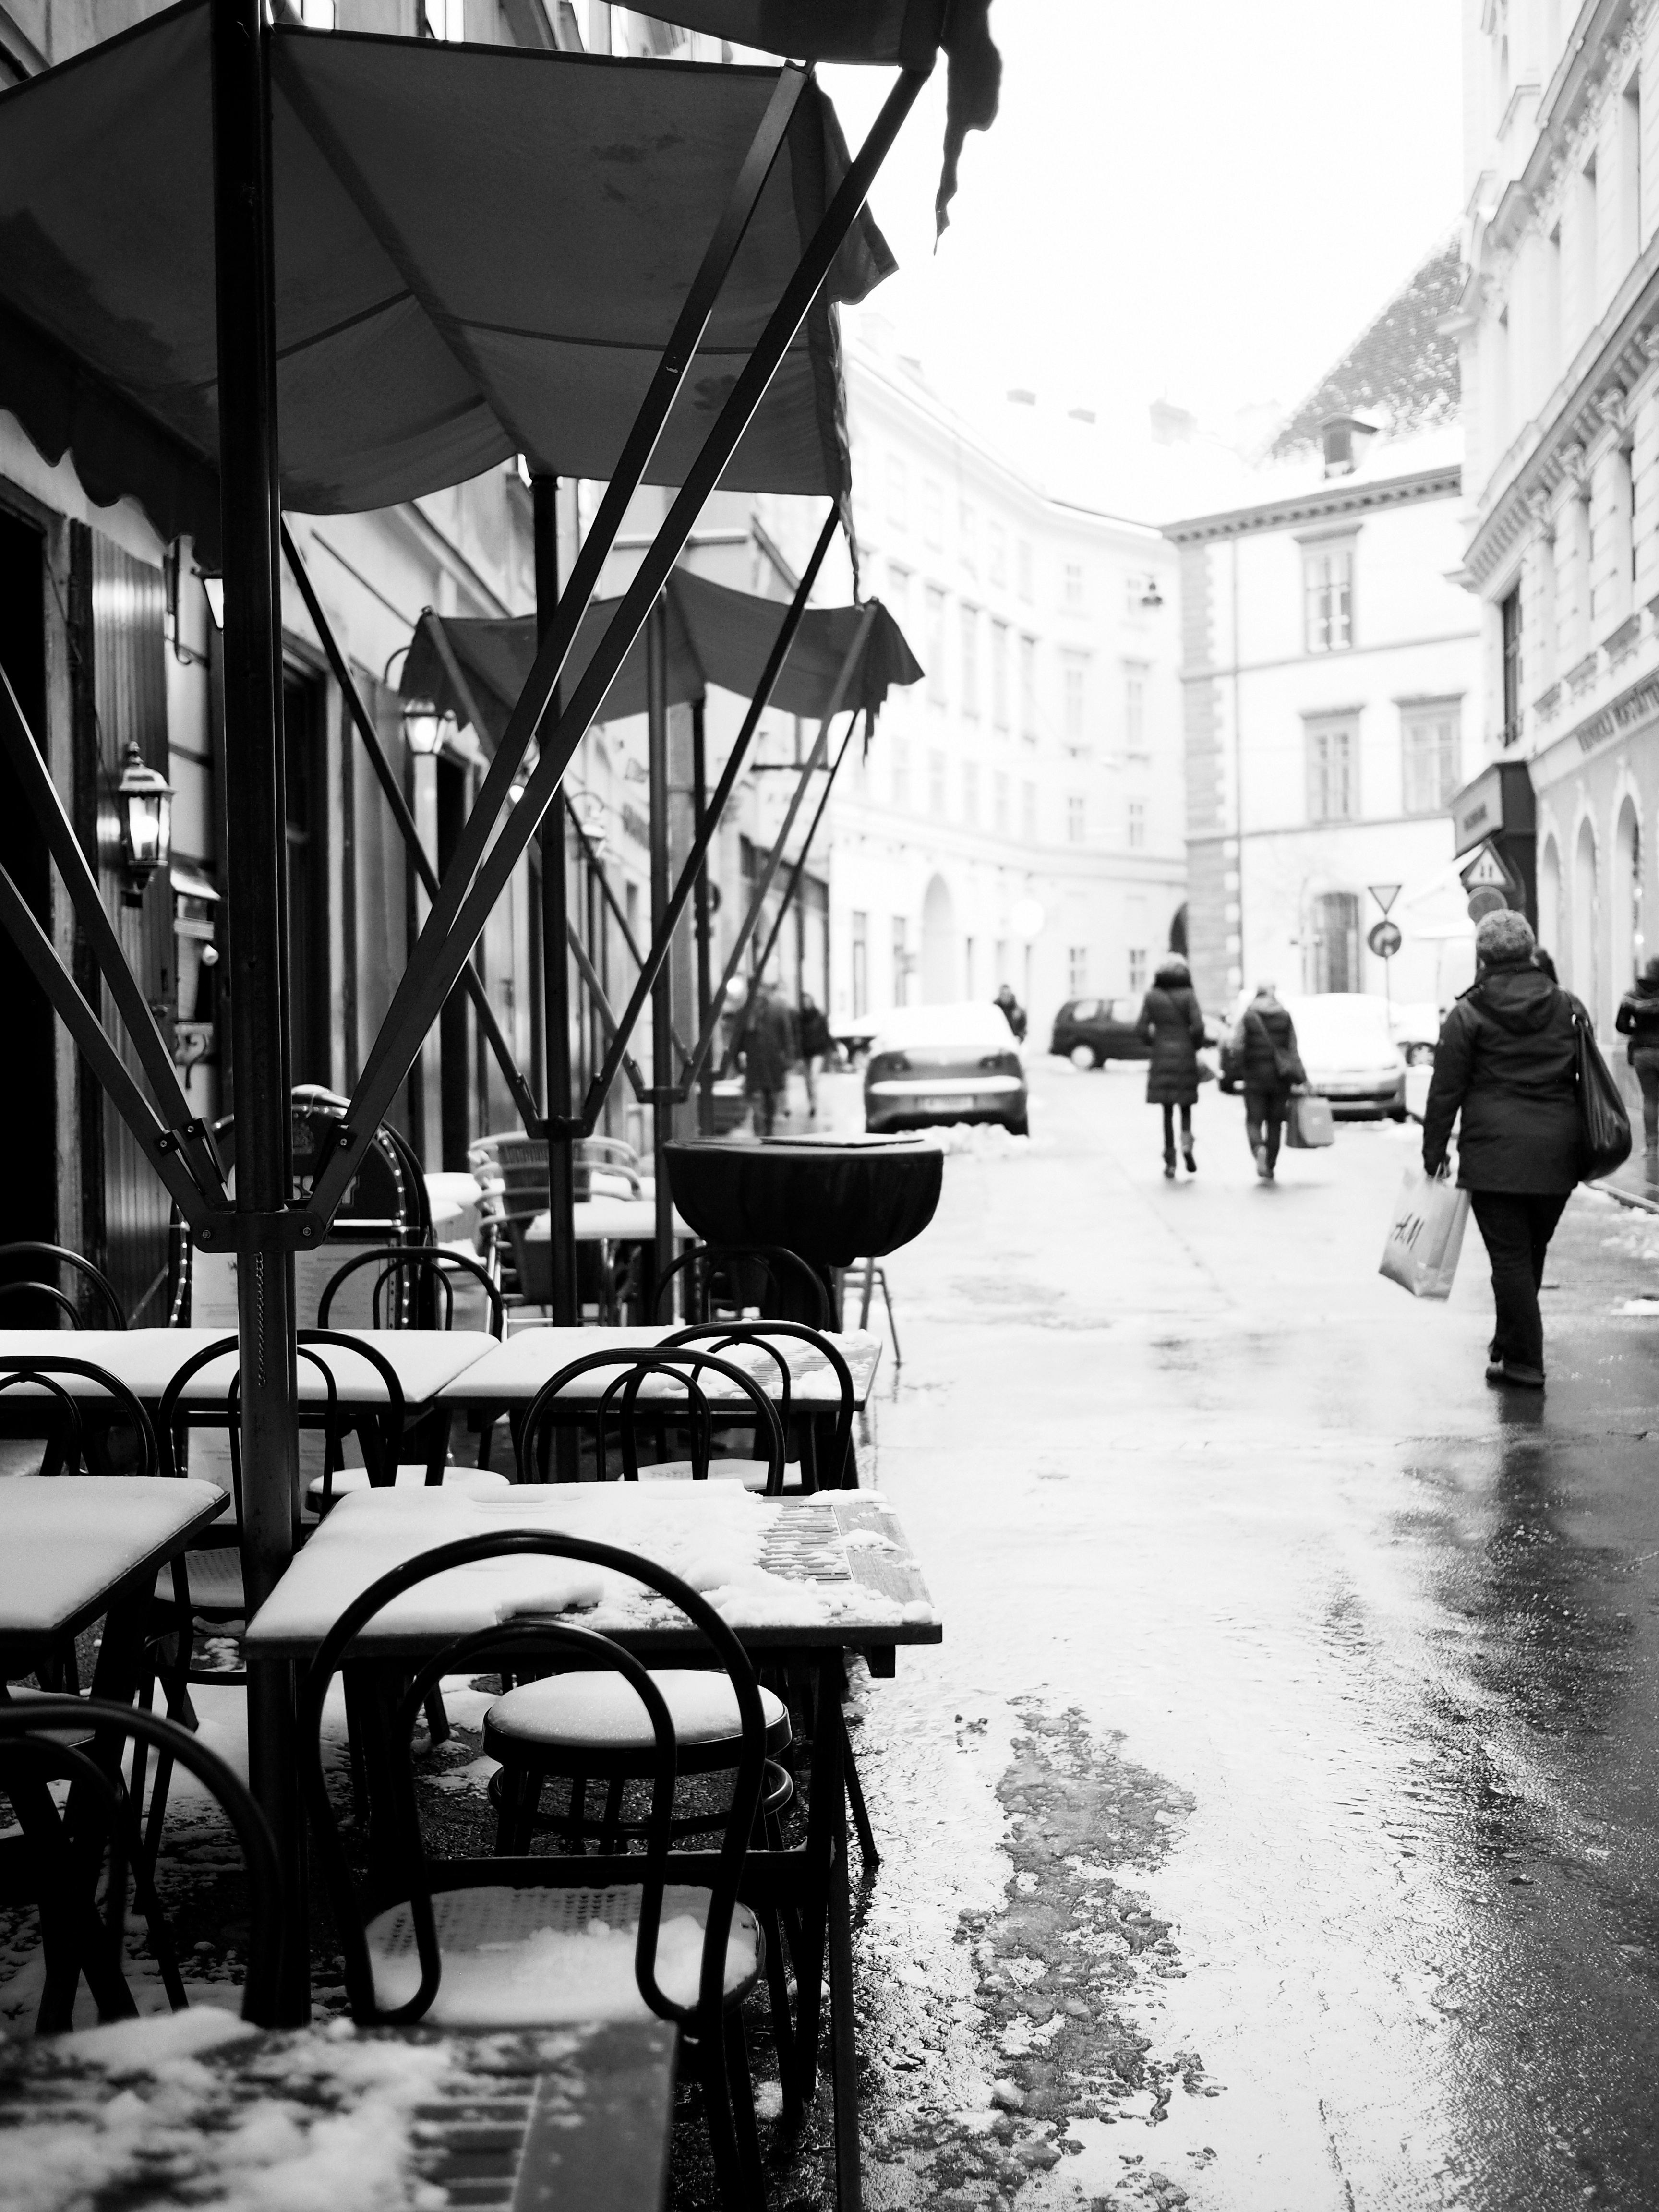 Vienna in the Winter